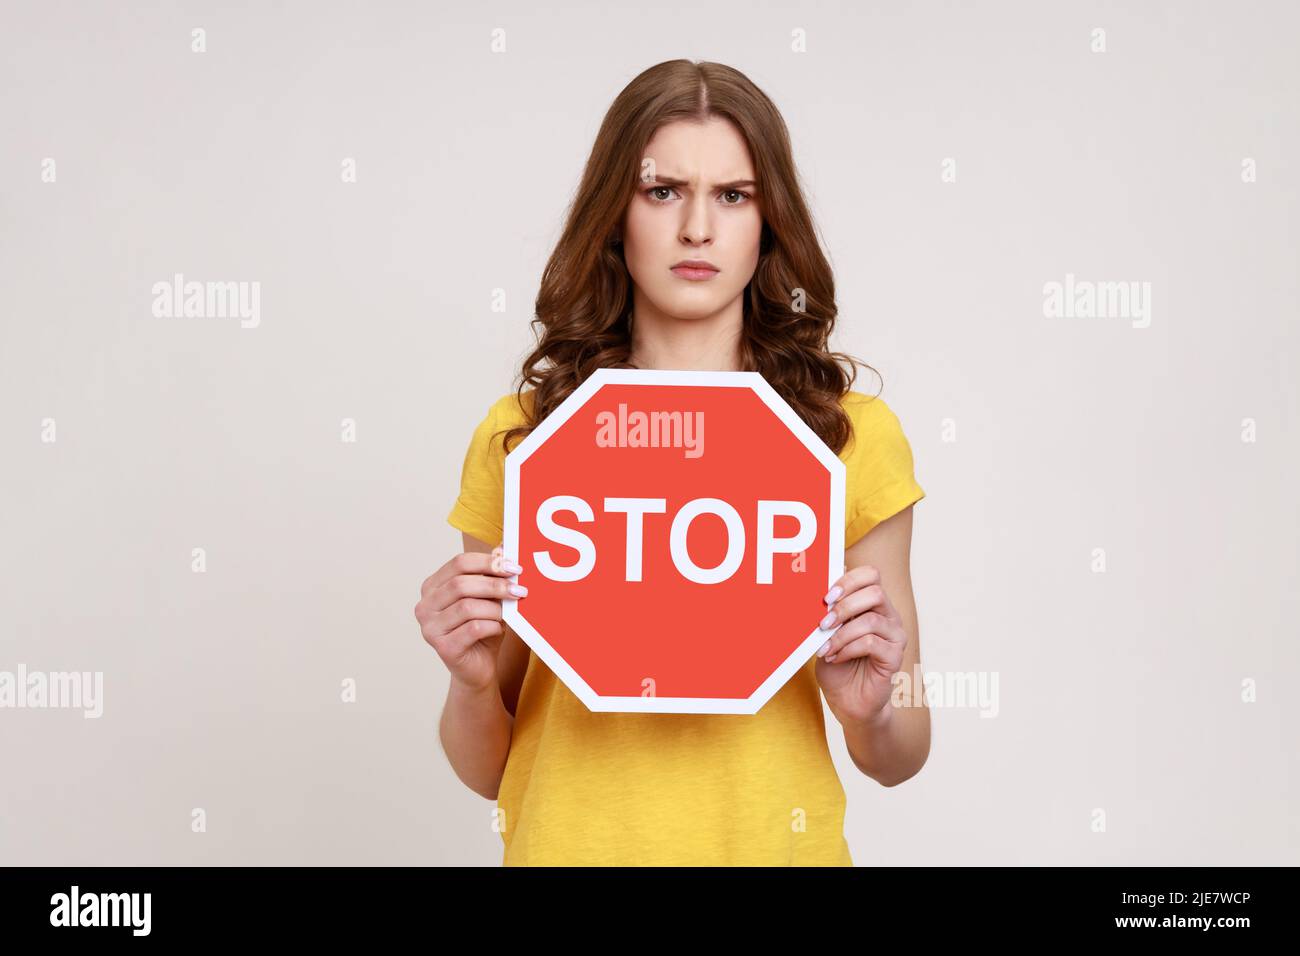 Interdiction, accès interdit. Jeune femme sérieuse en T-shirt jaune tenant un panneau d'arrêt rouge, avertissement et regardant avec colère et stricte à la caméra. Prise de vue en studio isolée sur fond gris. Banque D'Images